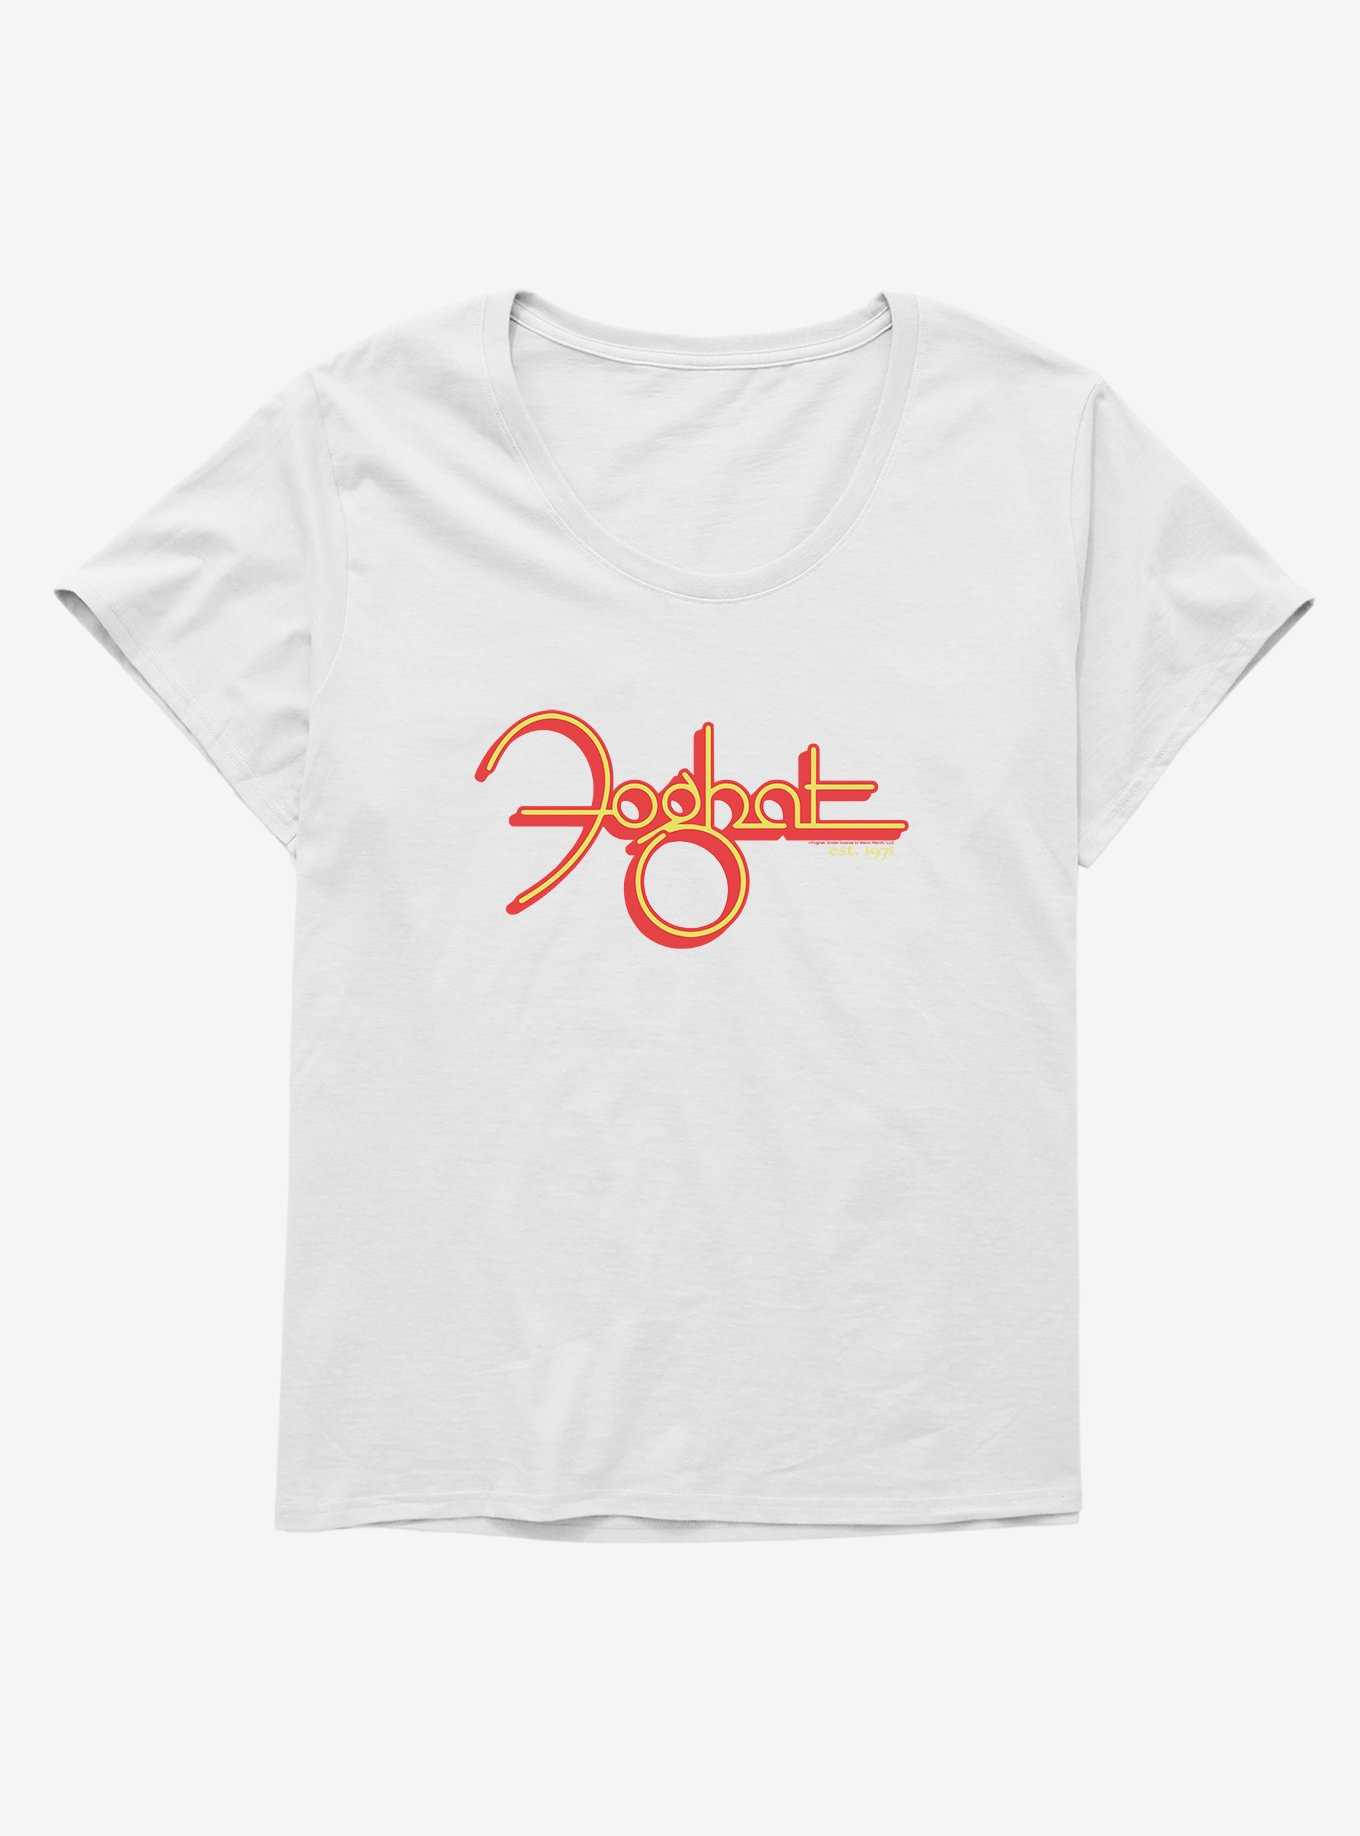 Foghat EST. 1971 Girls T-Shirt Plus Size, , hi-res